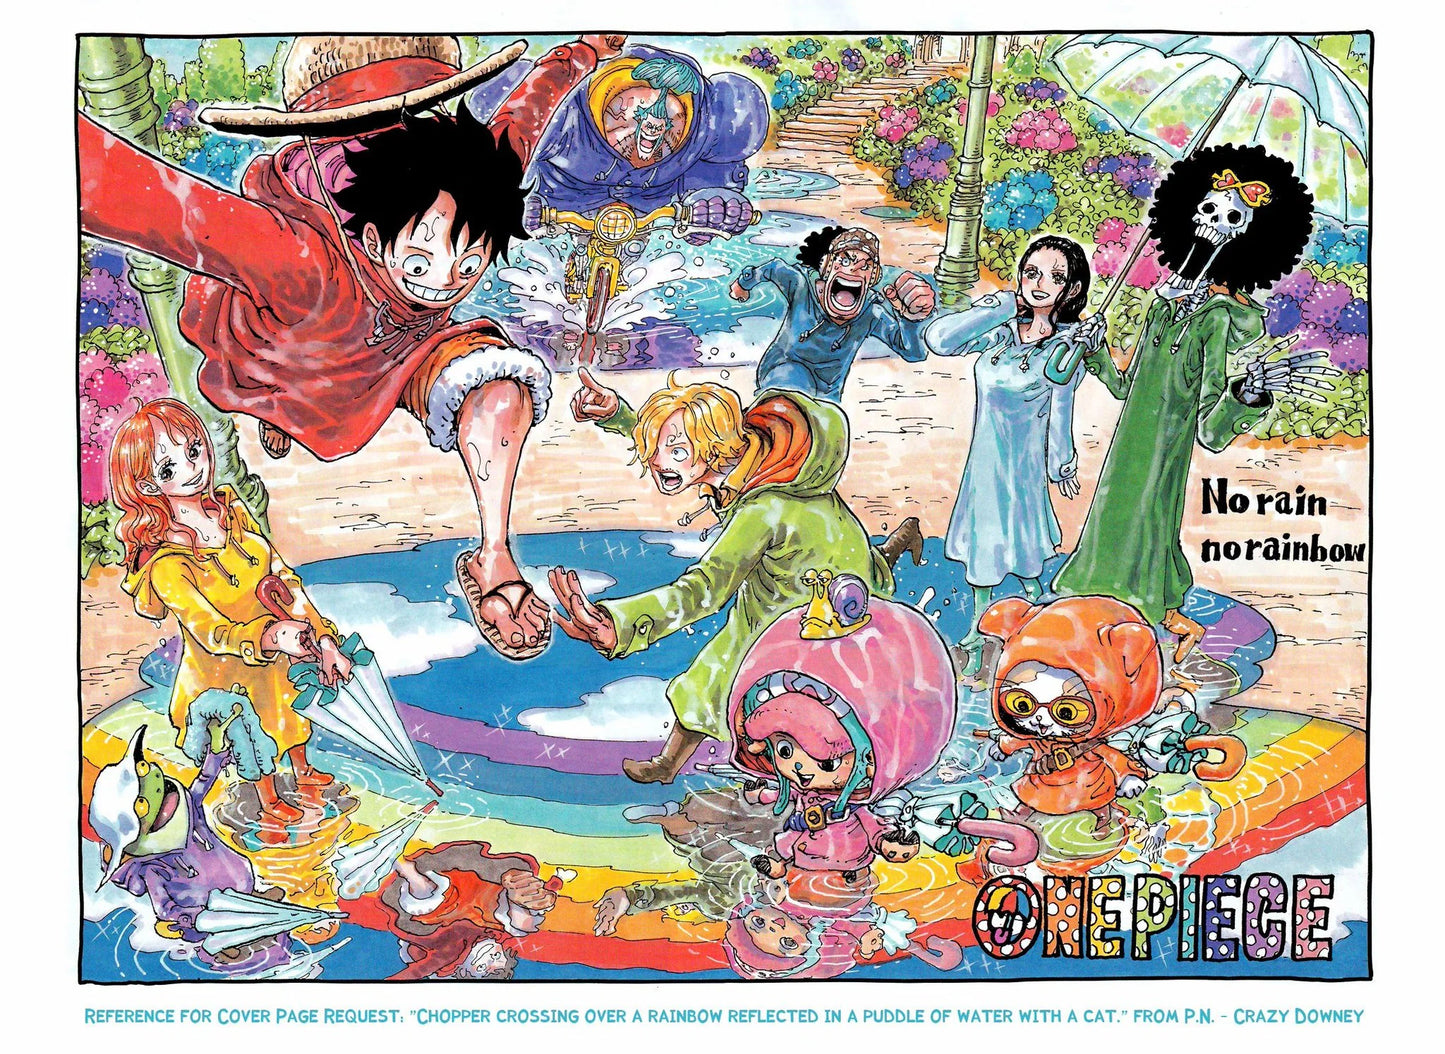 Shonen Jump faz uma ótima alteração em seu calendário de Novembro para One  Piece - Critical Hits